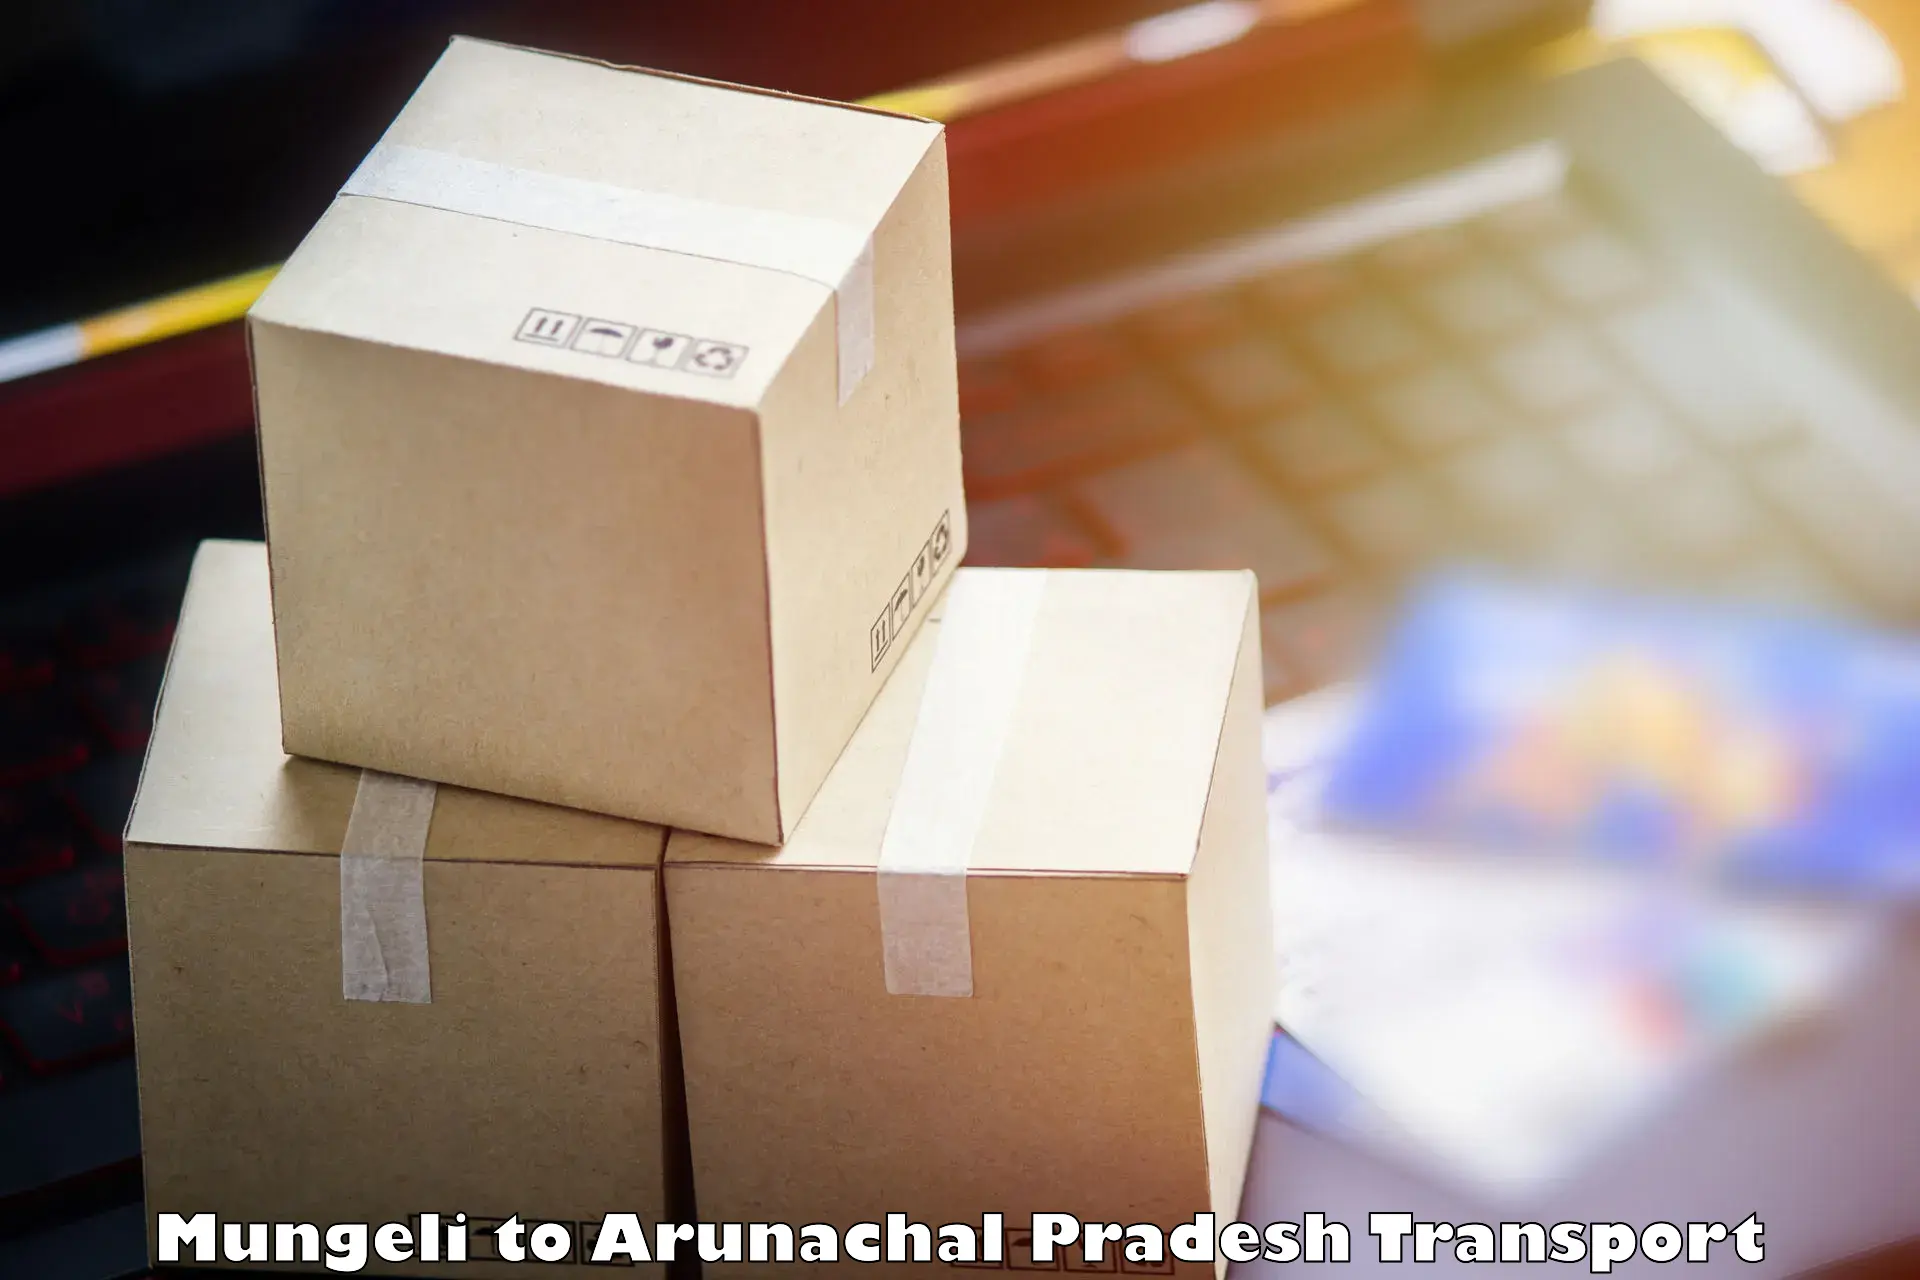 Lorry transport service Mungeli to Arunachal Pradesh